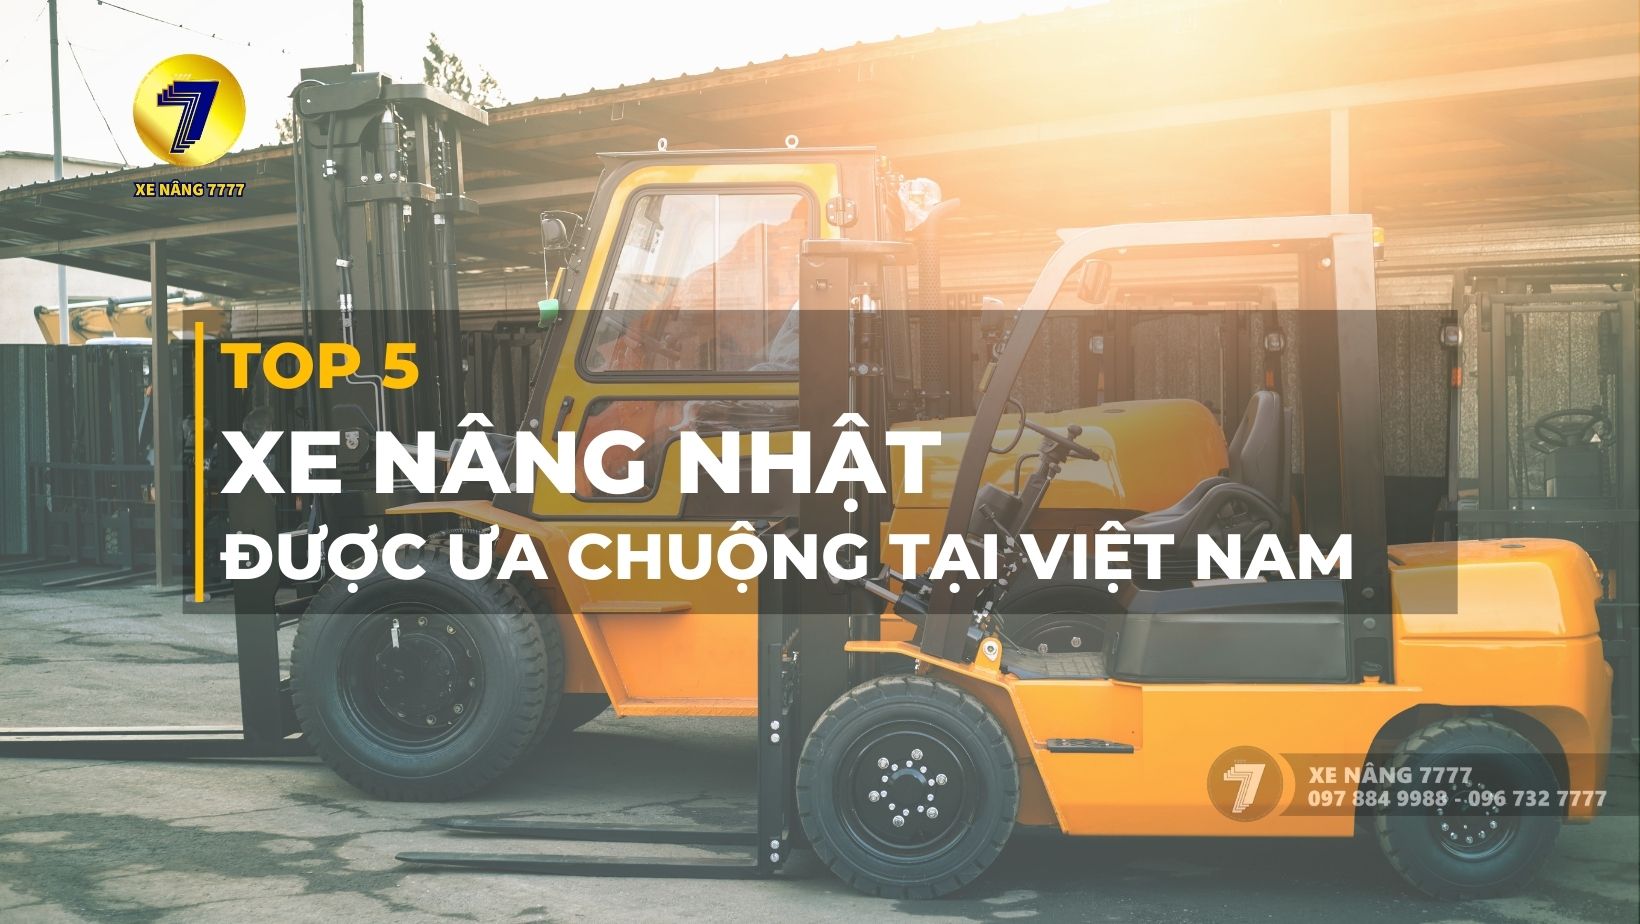 Top 5 hãng xe nâng Nhật được ưa chuộng tại Việt Nam